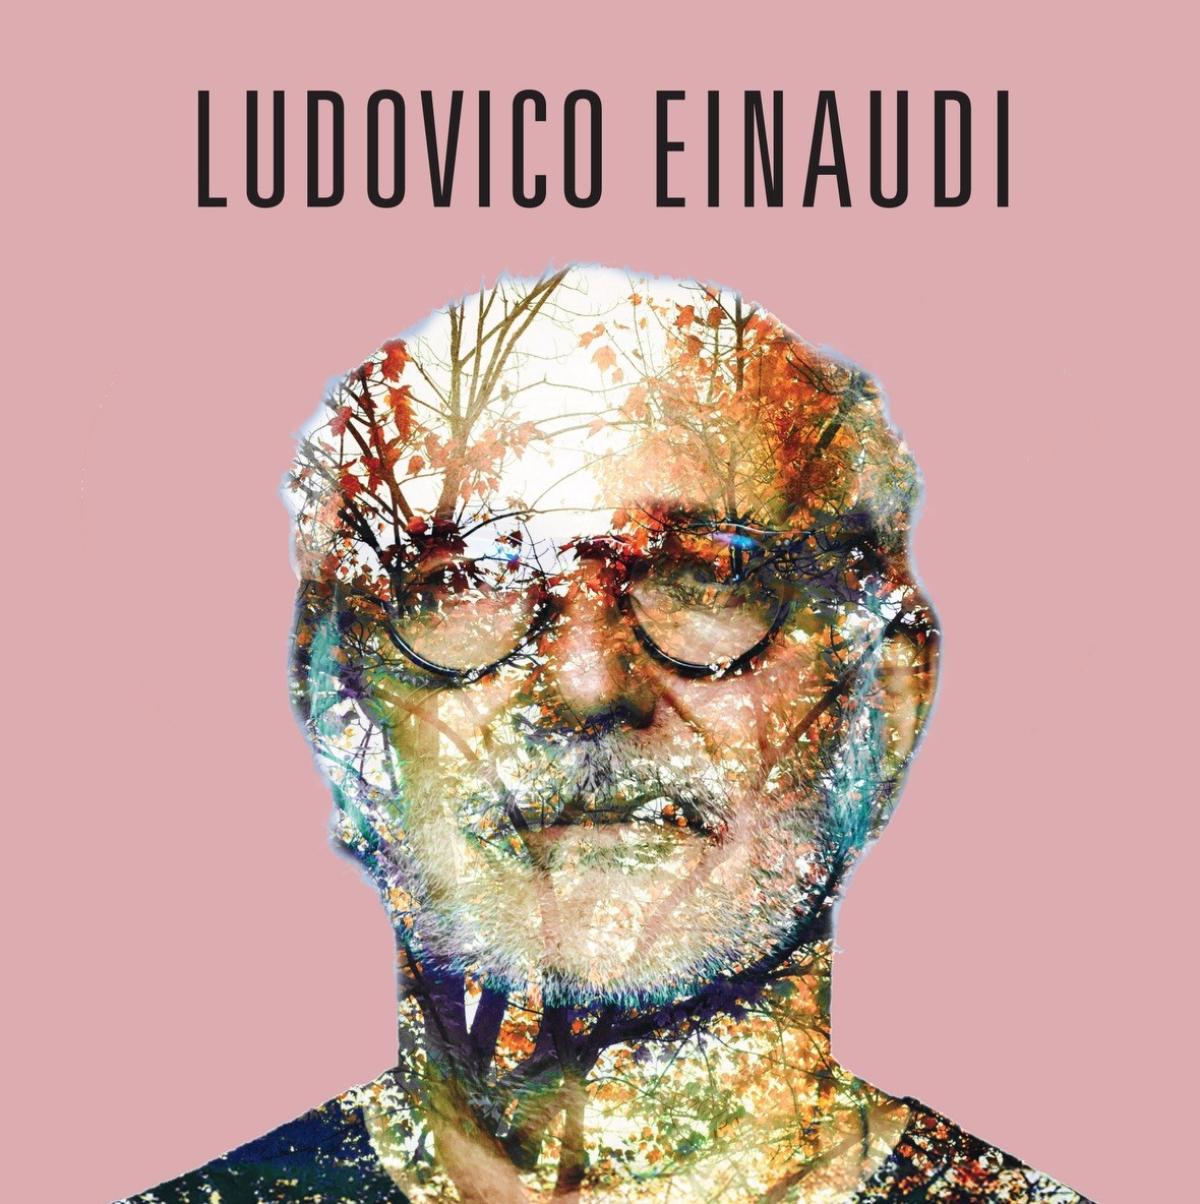 Ludovico Einaudi at Bilbao Arena Tickets